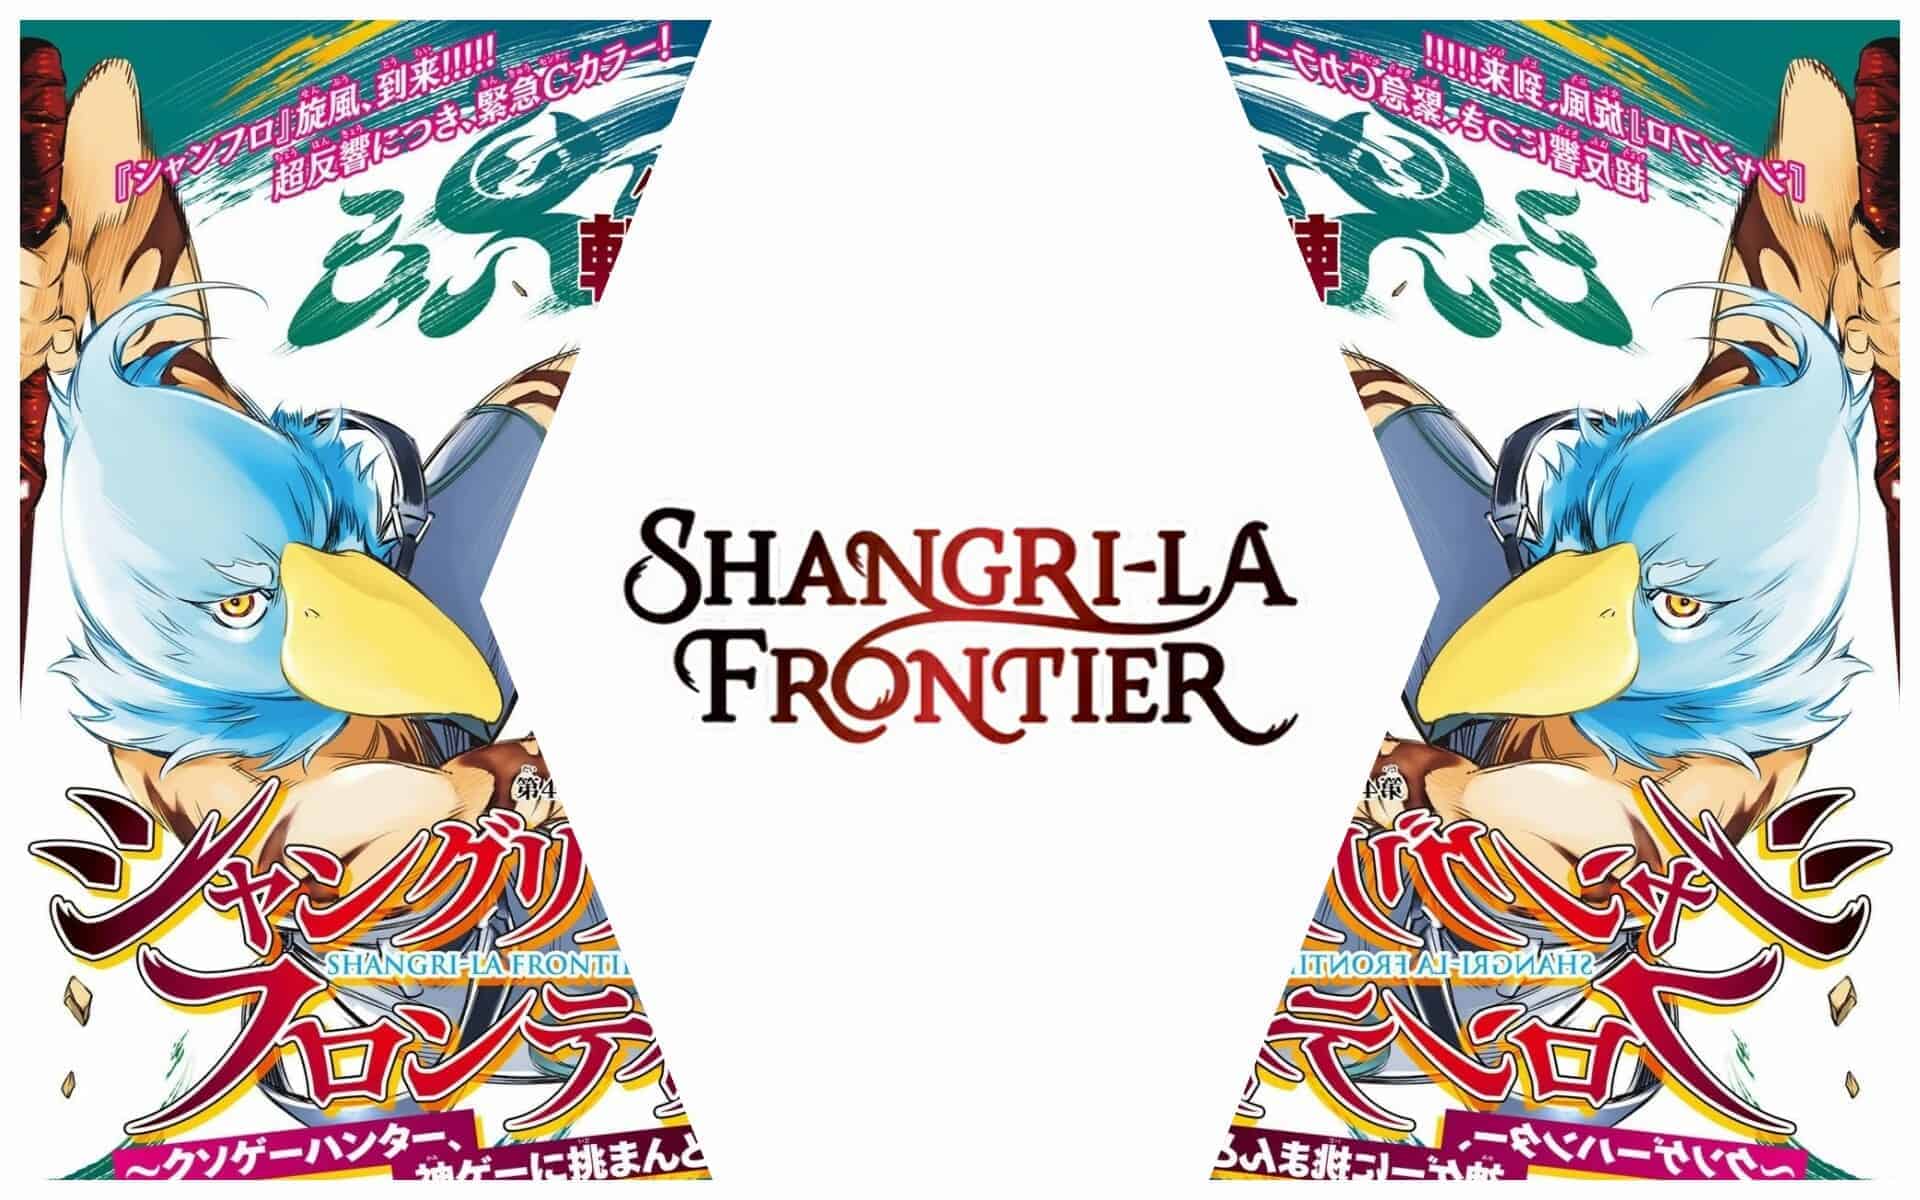 Shangri-La Frontier Chapter 127 Release date details